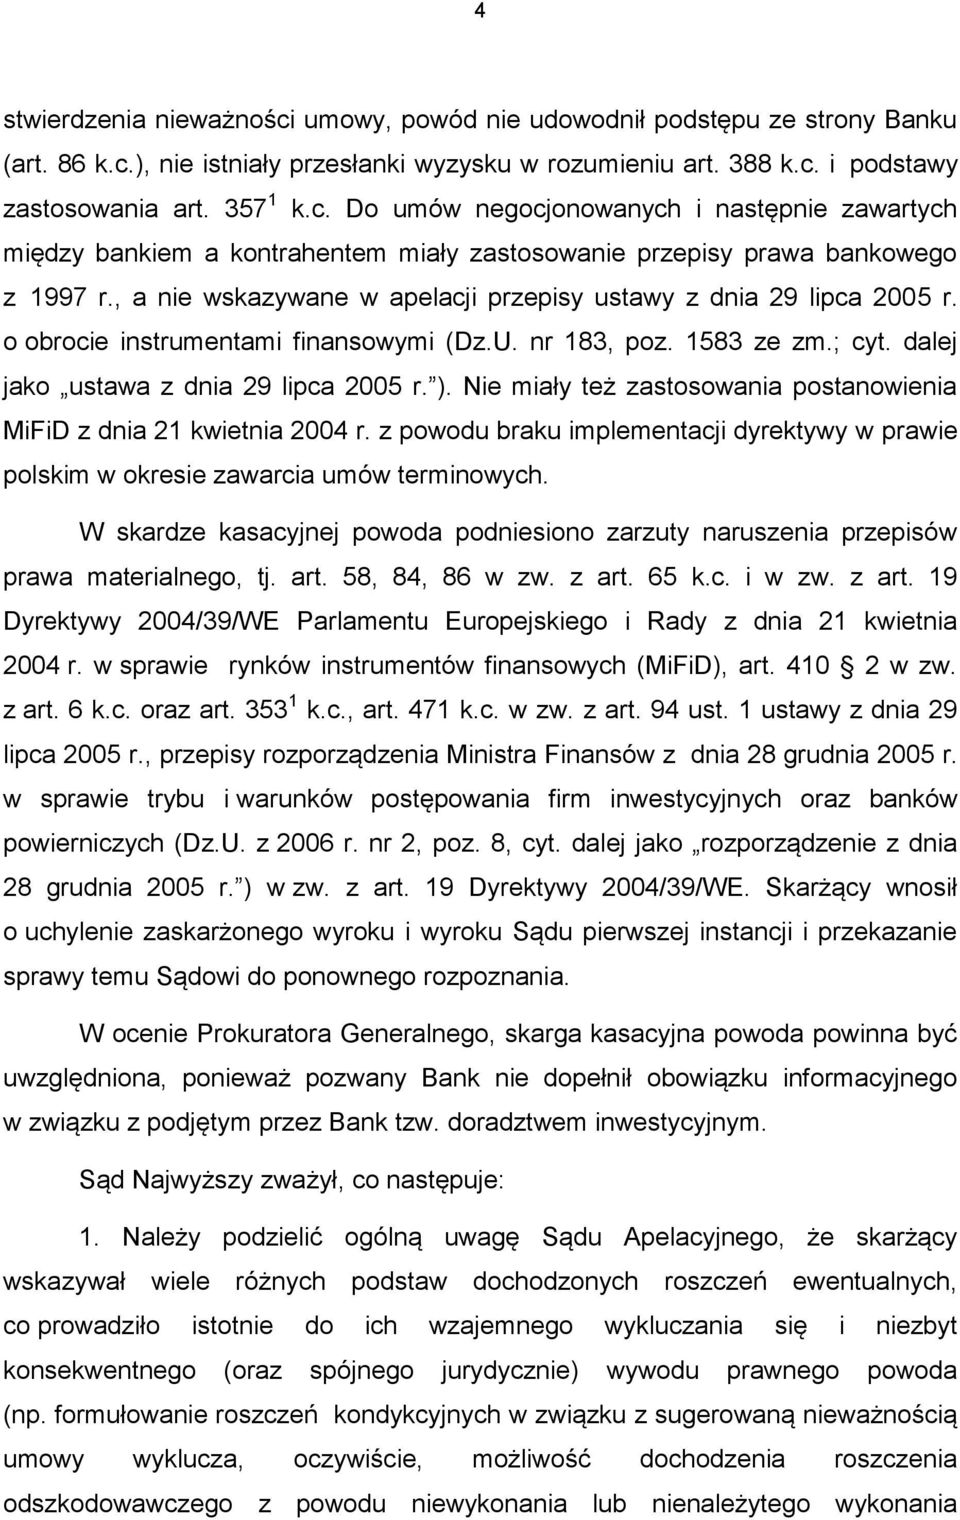 Nie miały też zastosowania postanowienia MiFiD z dnia 21 kwietnia 2004 r. z powodu braku implementacji dyrektywy w prawie polskim w okresie zawarcia umów terminowych.